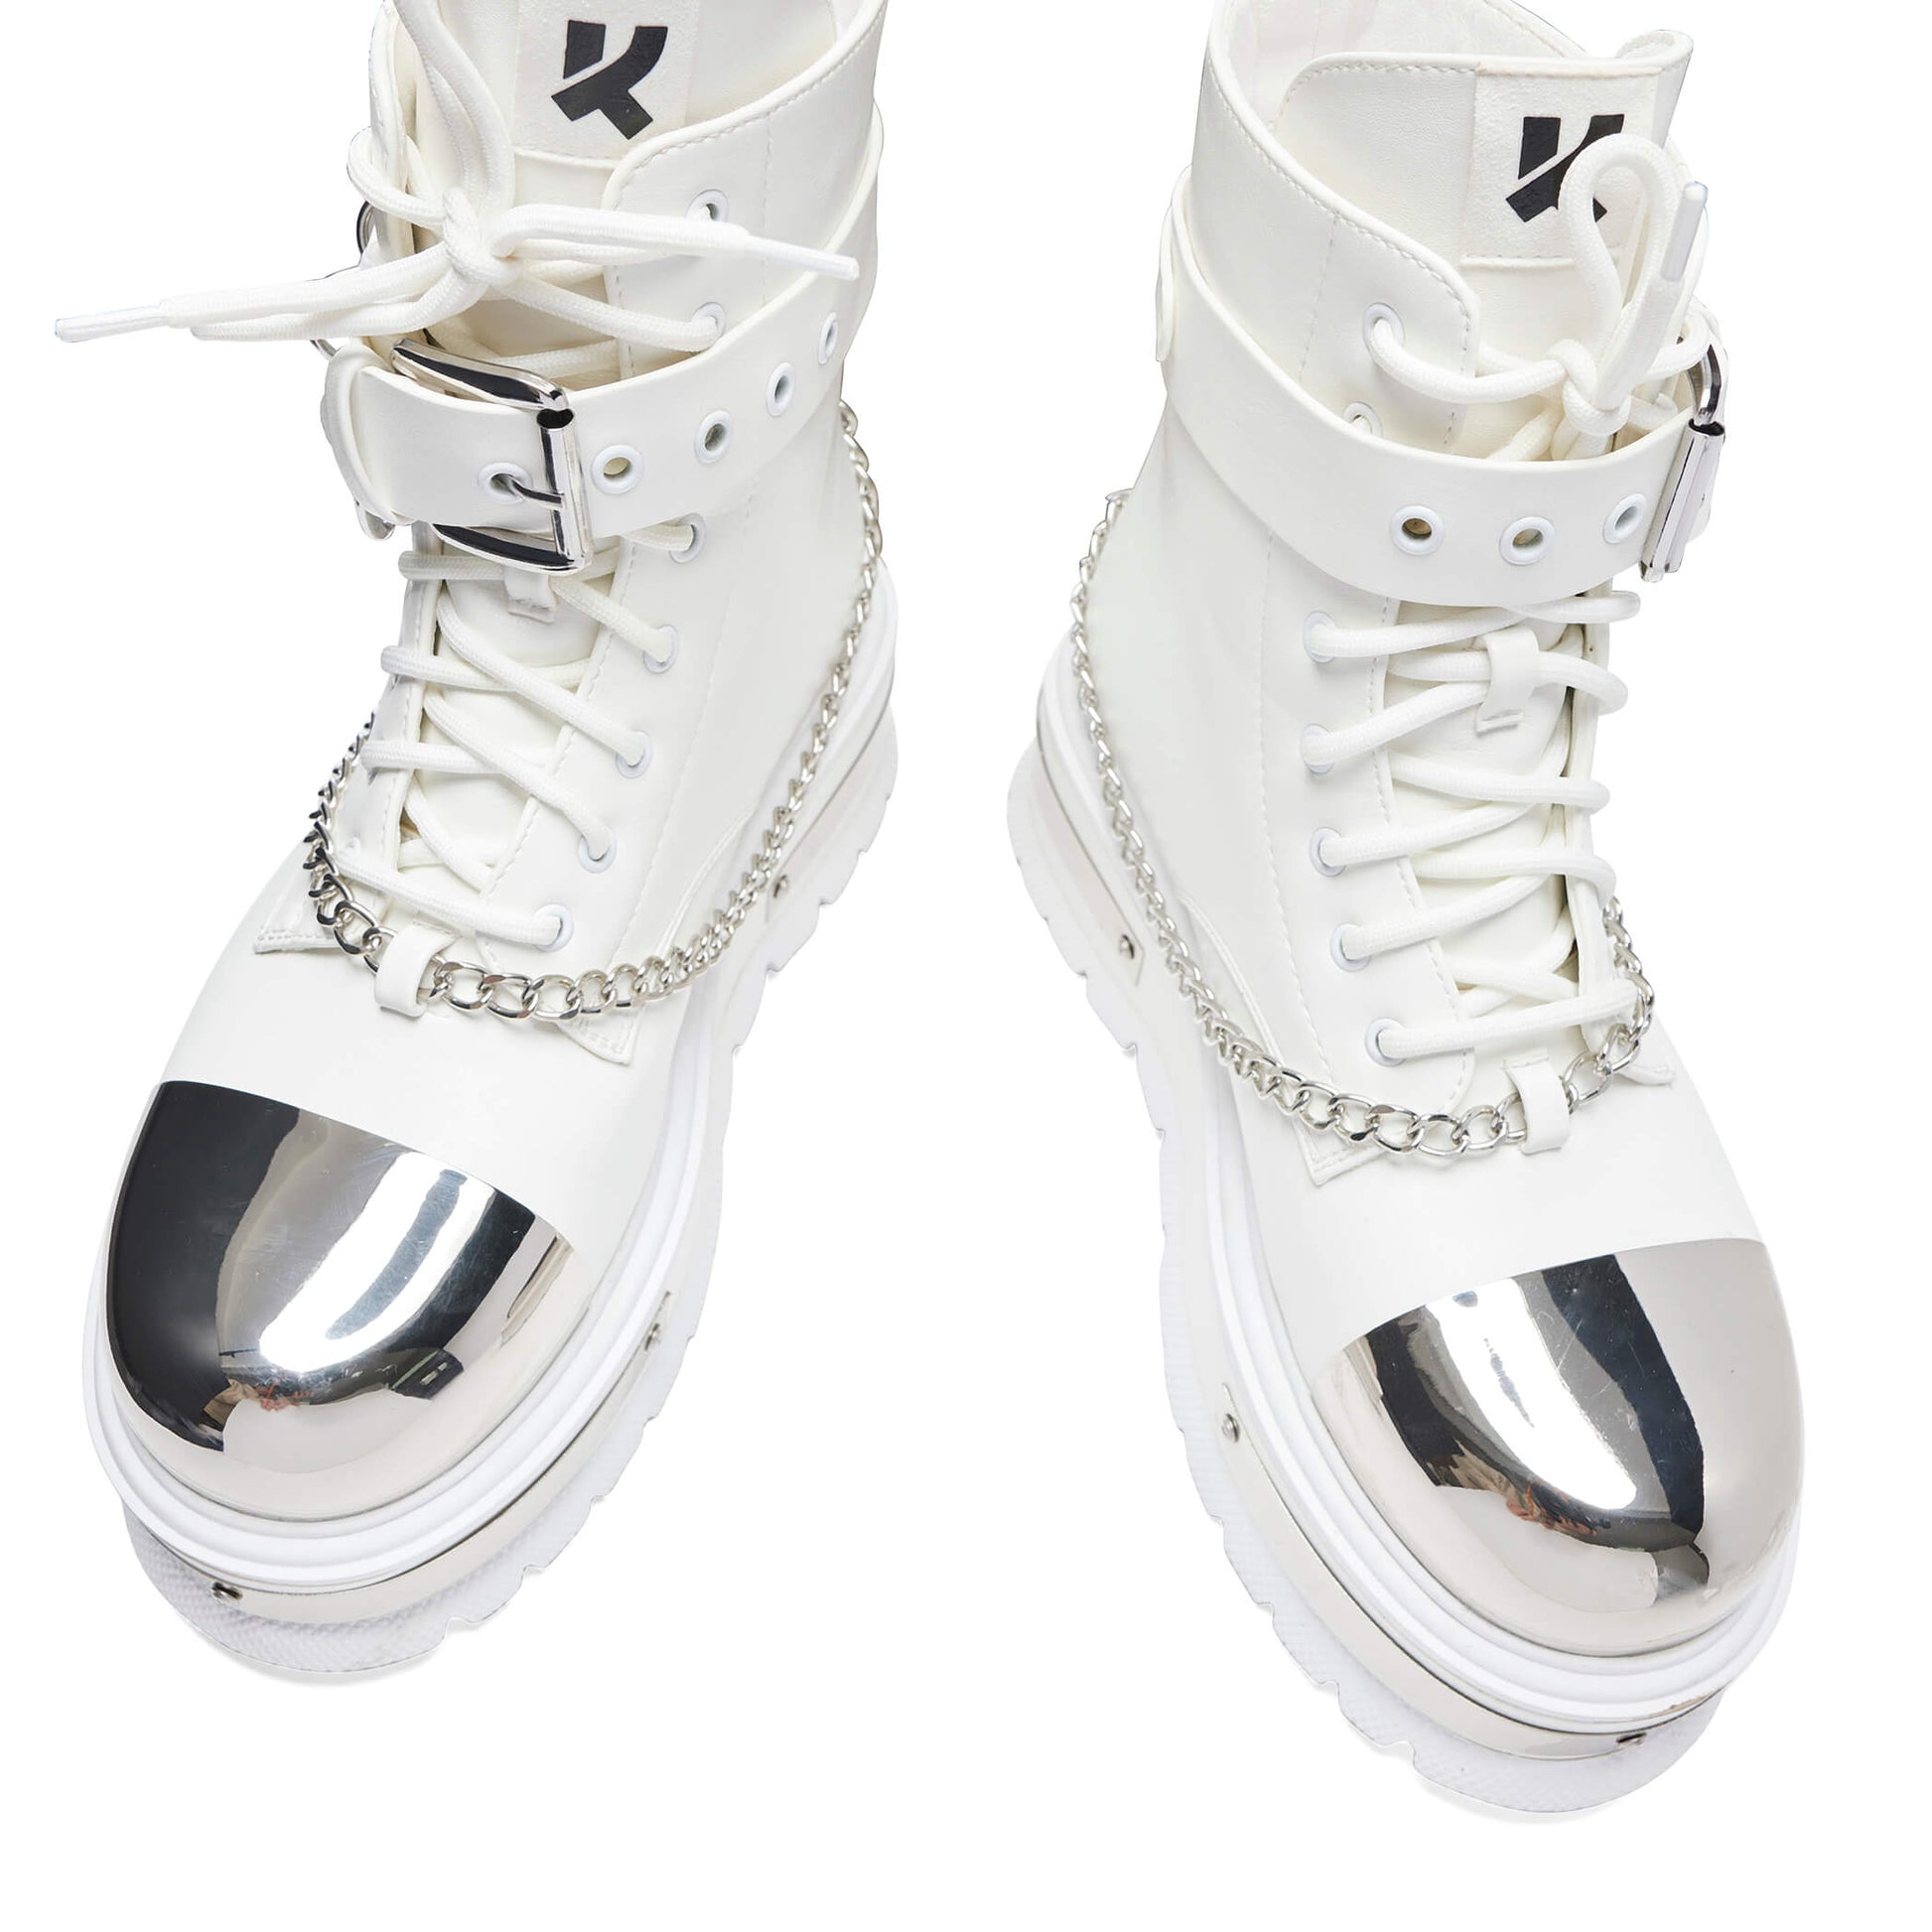 Borin Hardware Platform Boots - White - KOI Footwear - Top View